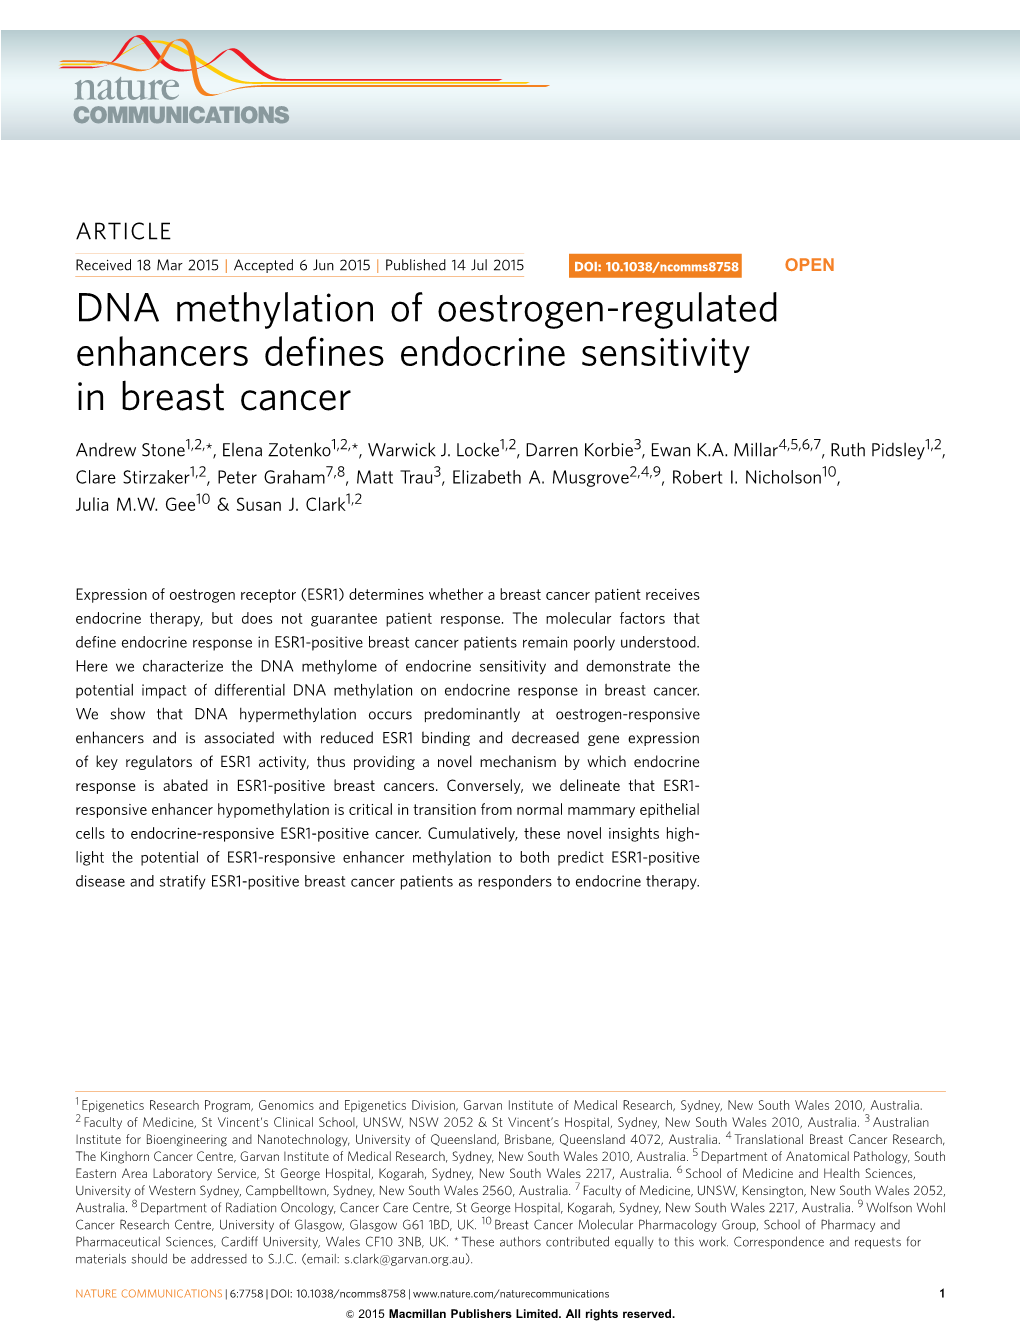 DNA Methylation of Oestrogen-Regulated Enhancers Deﬁnes Endocrine Sensitivity in Breast Cancer